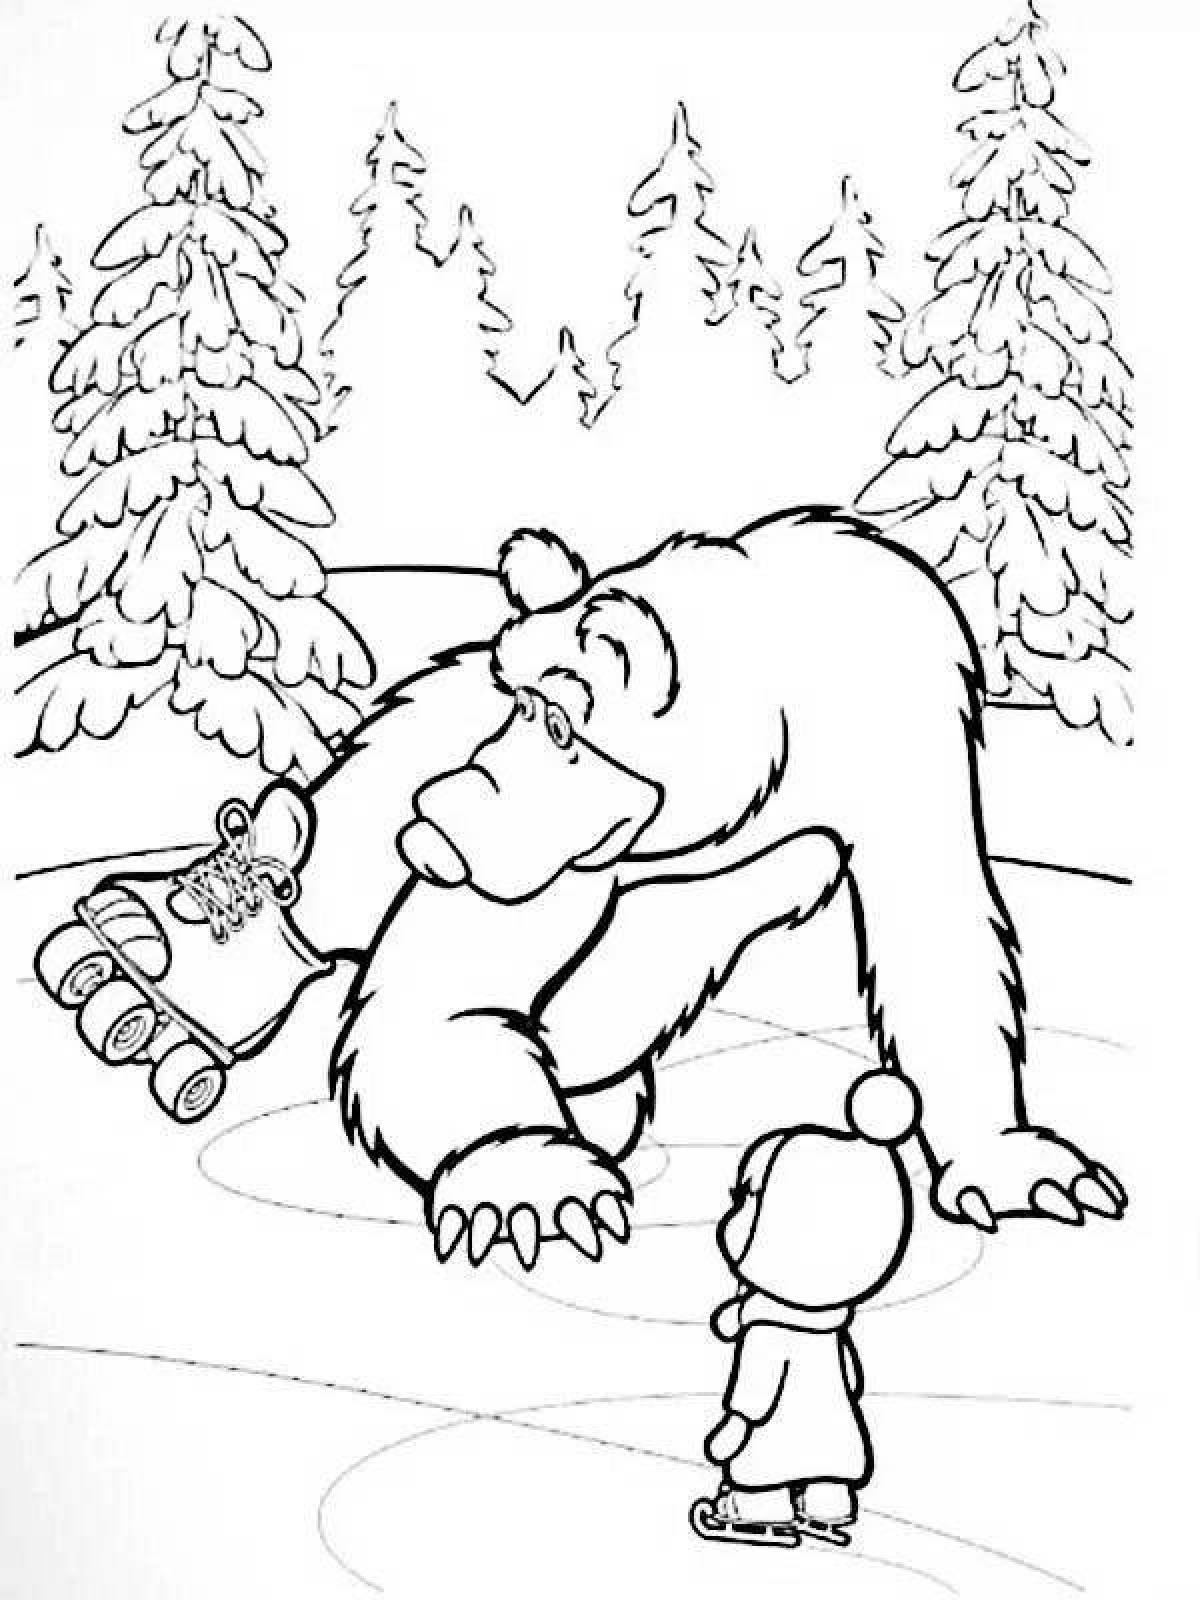 Игры раскраски маши. Маша и медведь зима раскраска. Маша и медведь Новогодняя раскраска. Новогодние разукрашки Маша и медведь. Медведь раскраска для детей.